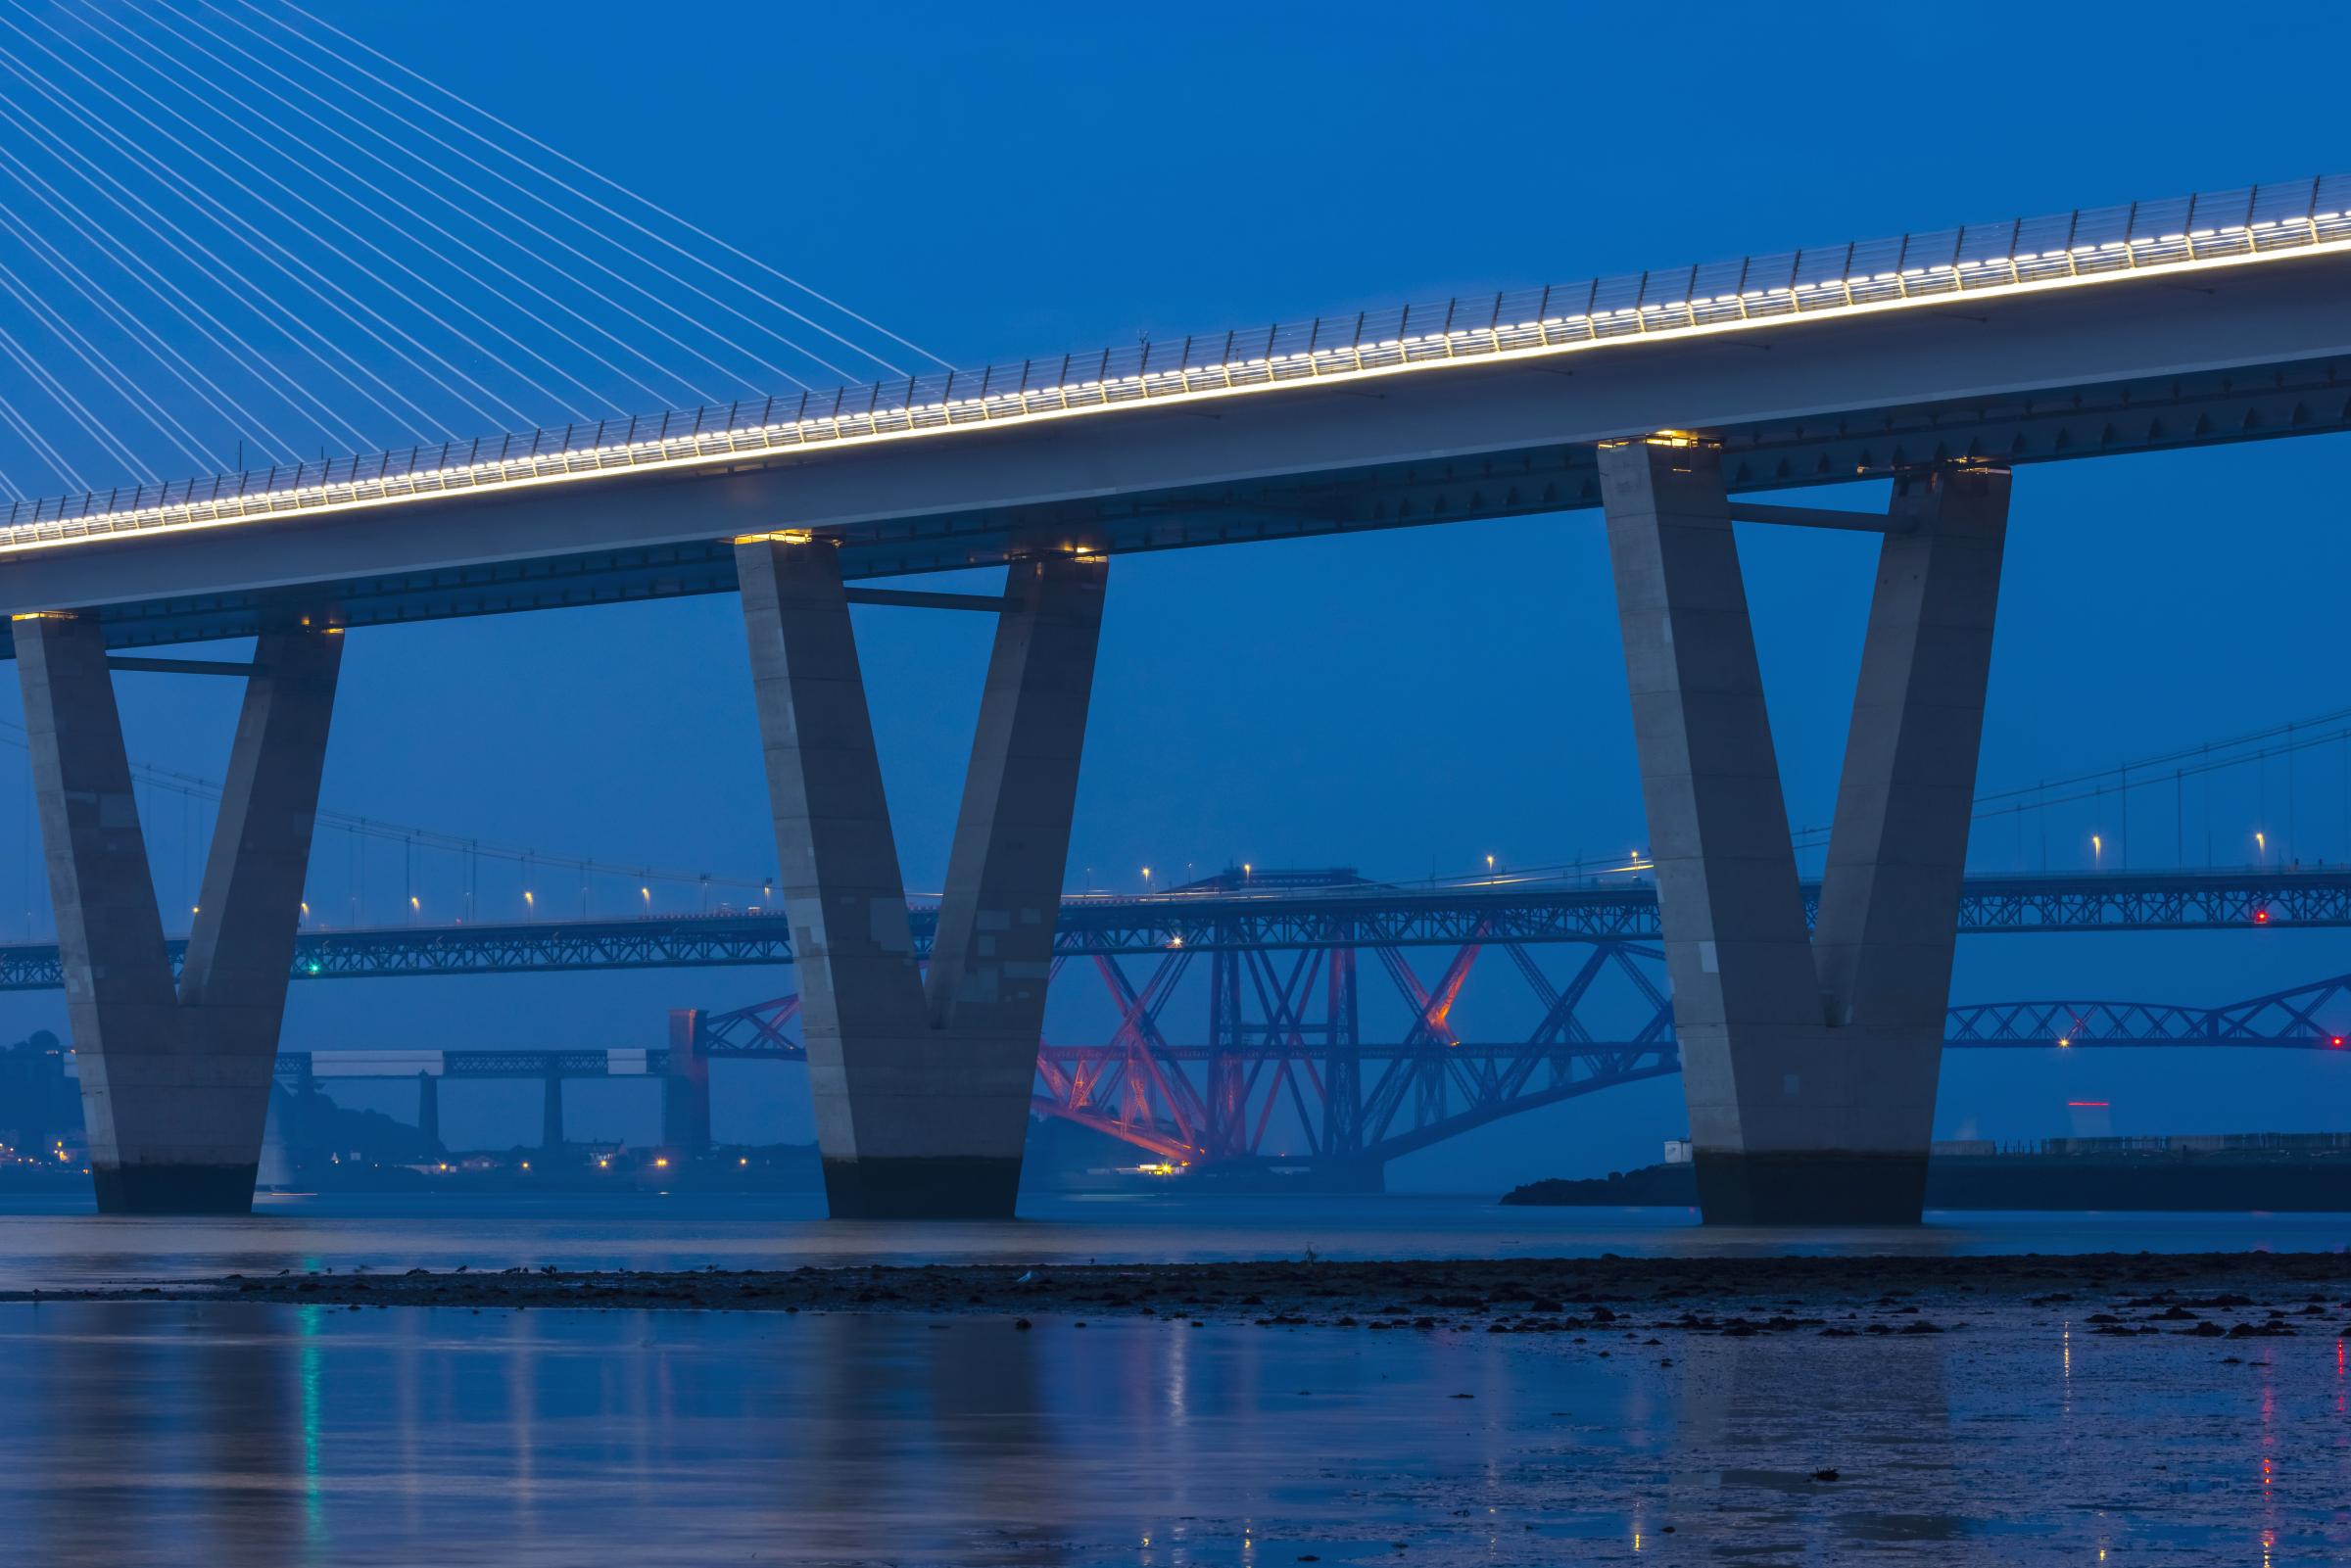 Image captures the three bridges including UNESCO site the Forth Bridge